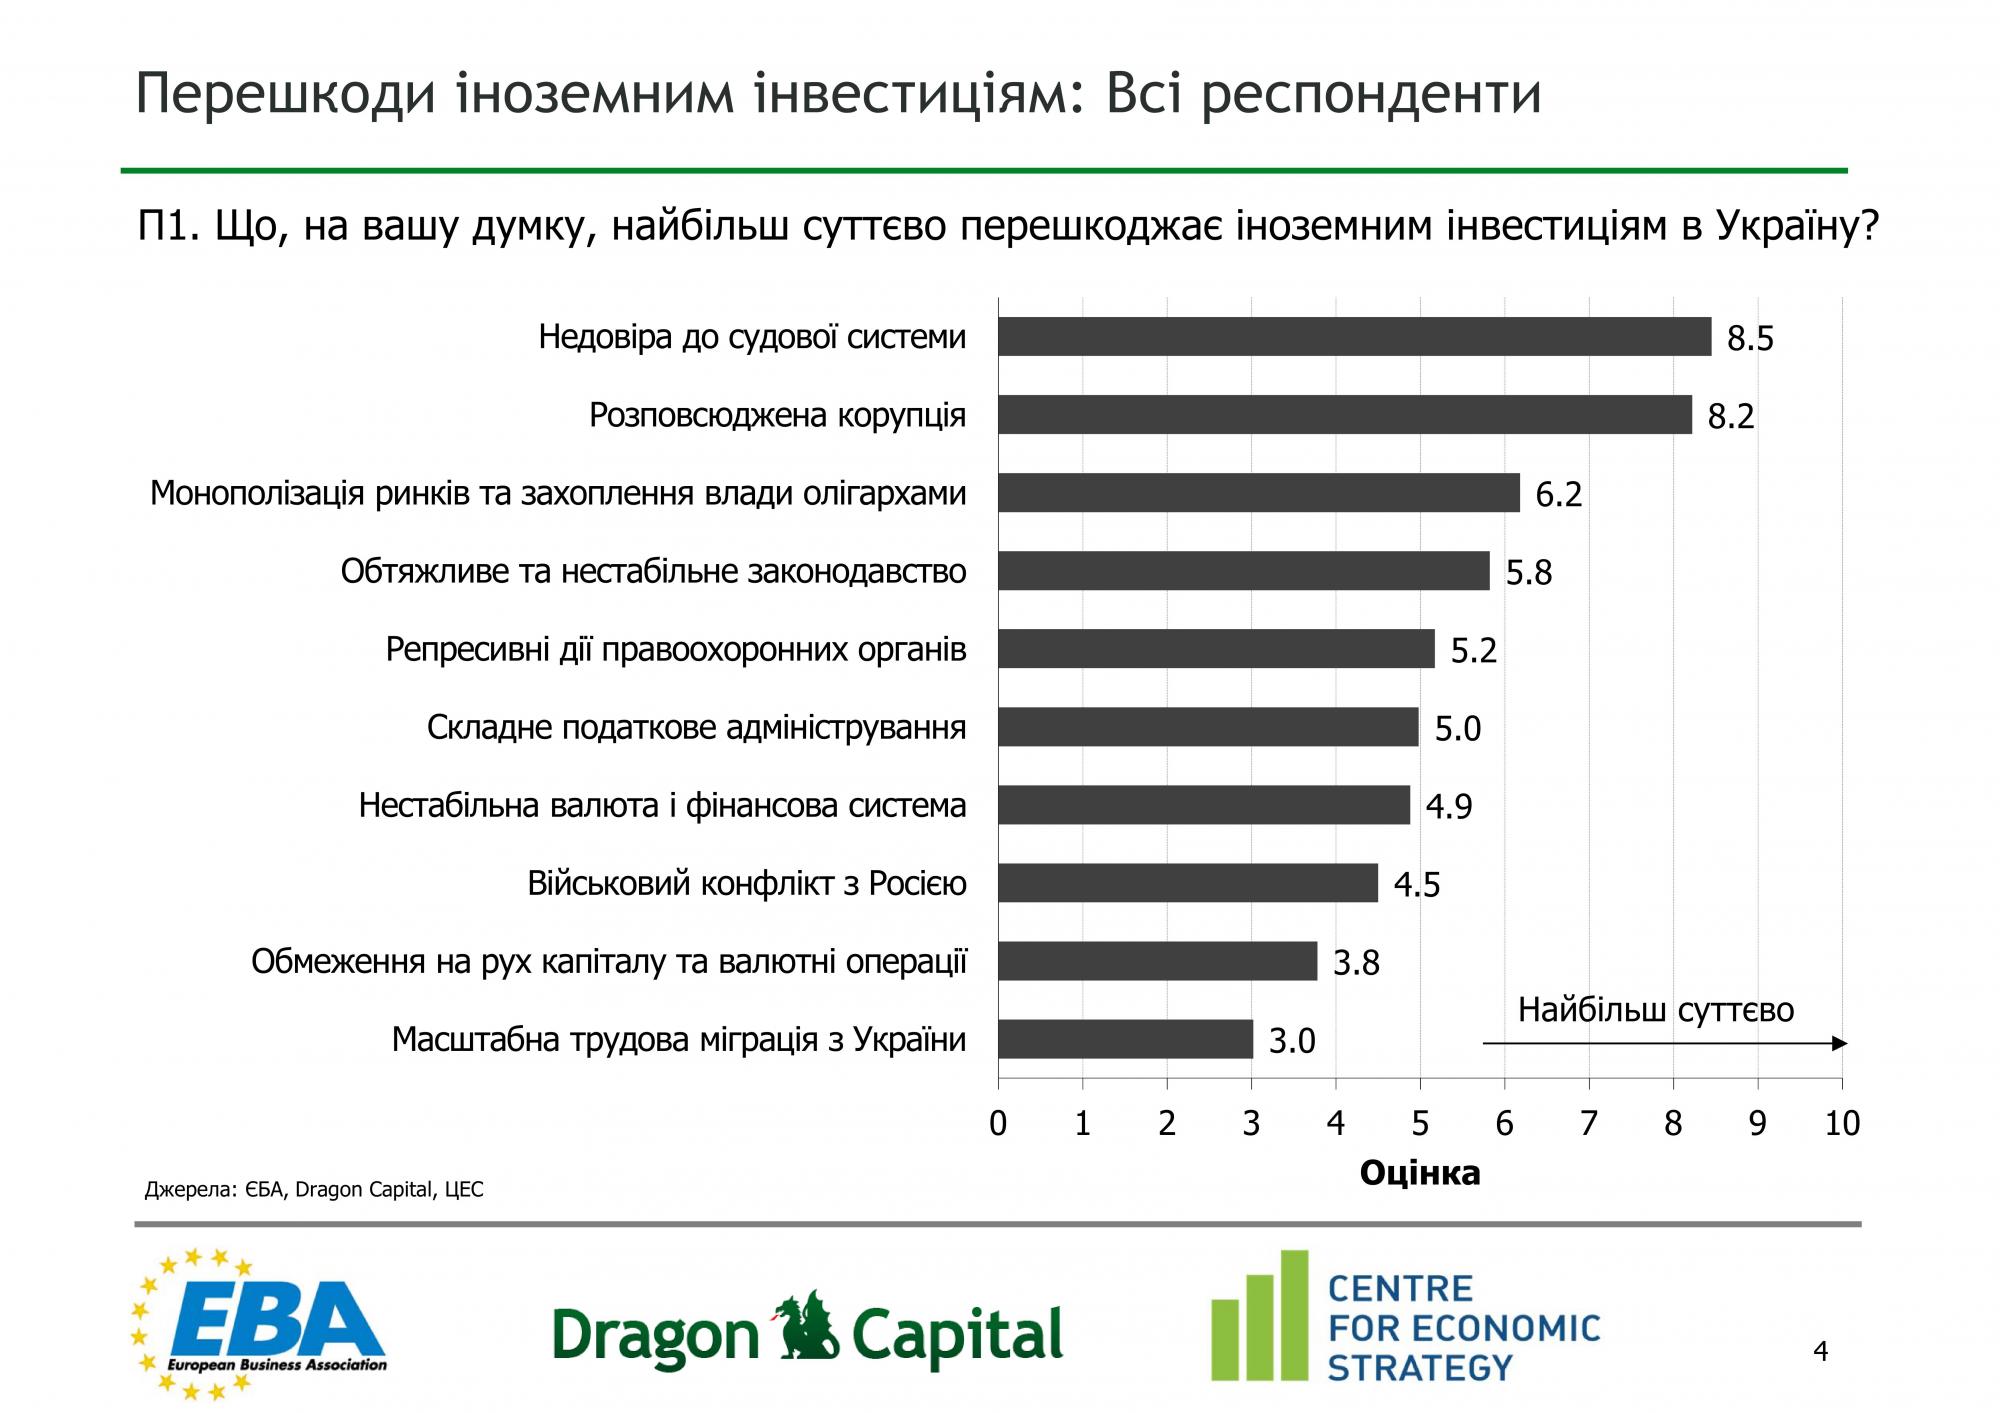 Половина иностранных компаний заметили ухудшение инвестклимата в Украине